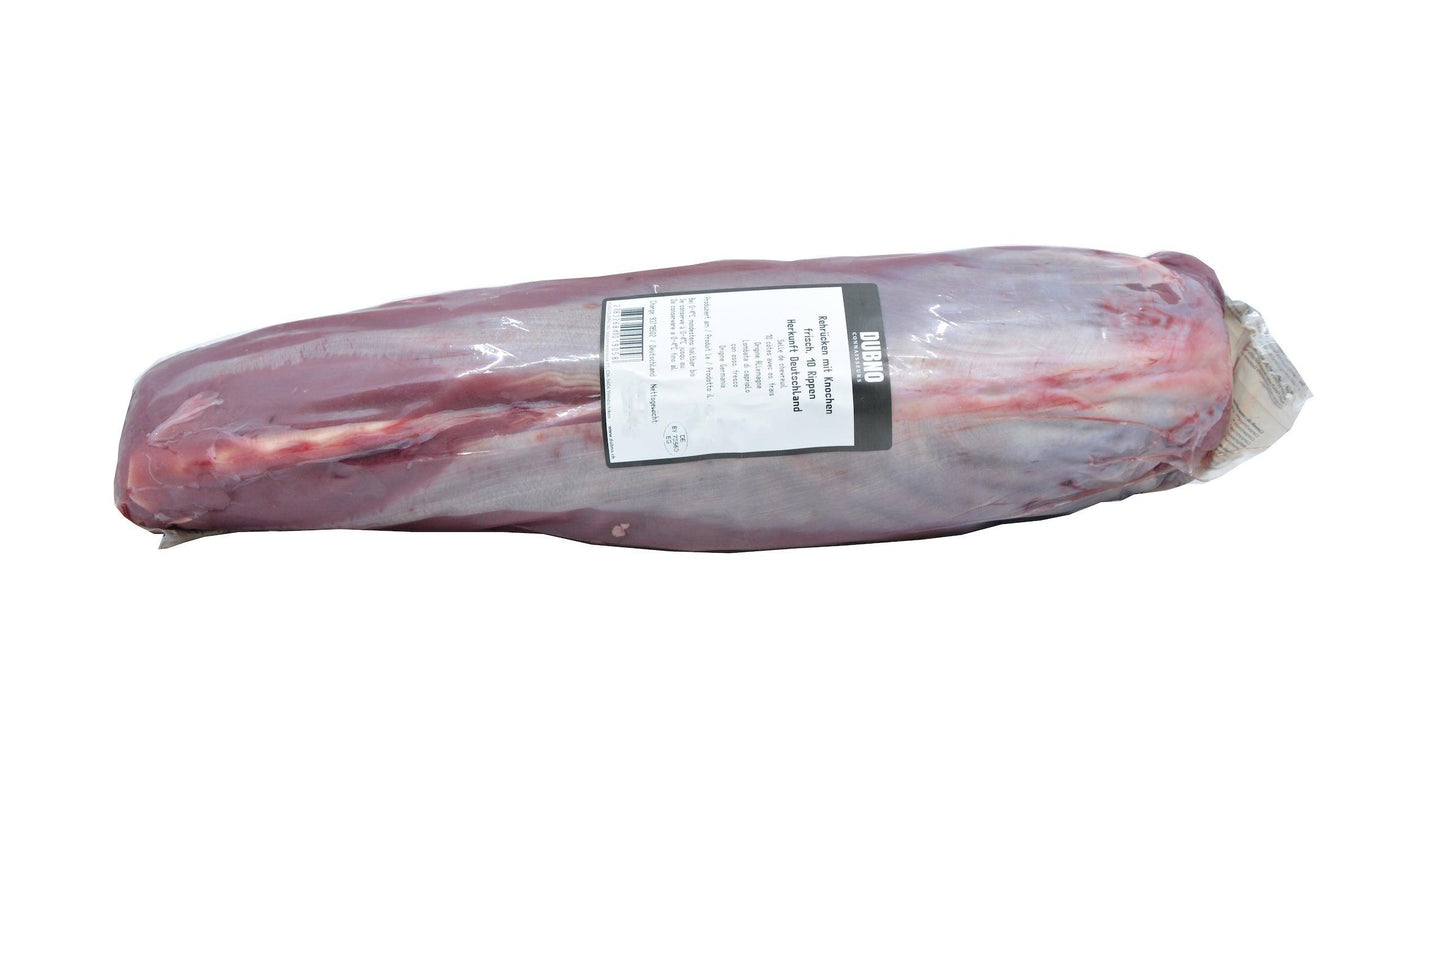 Reh | Rücken | kurz | aus Jagd | DE | 0.8 kg - 1.2 kg | gekühlt - Gourmet Depot AG